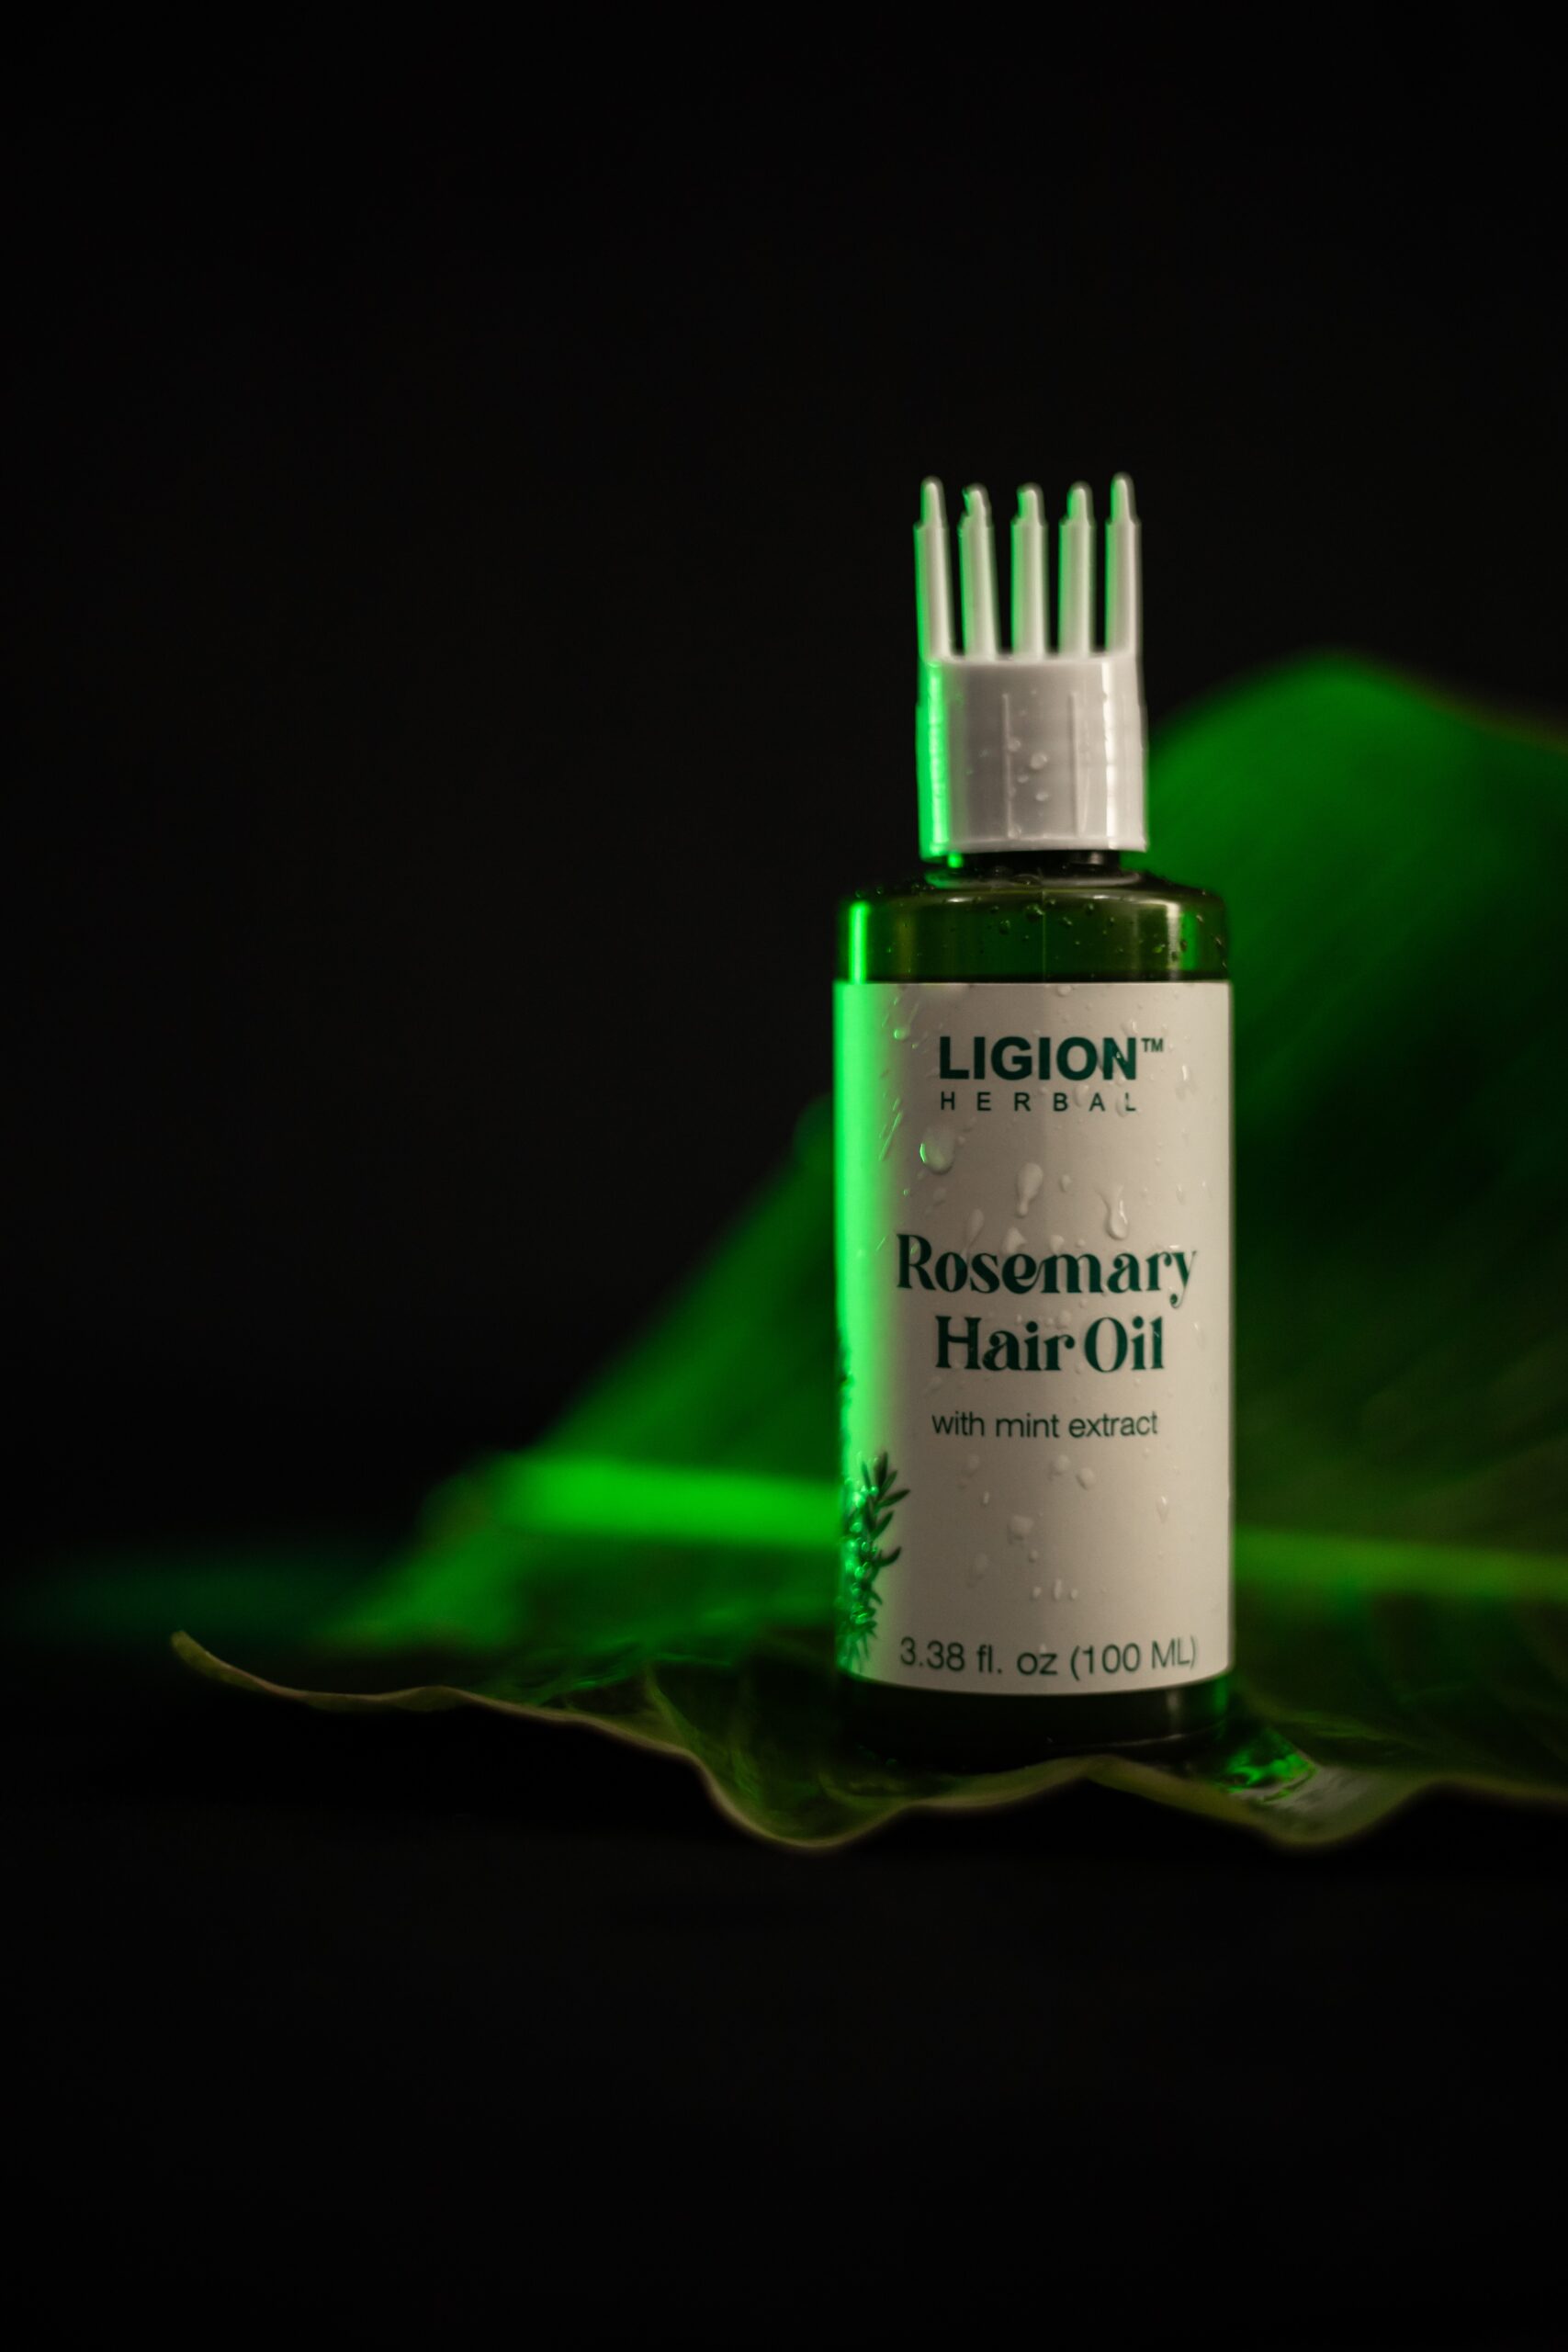 Rosemary Hair Oil Ligion Herbal 3521